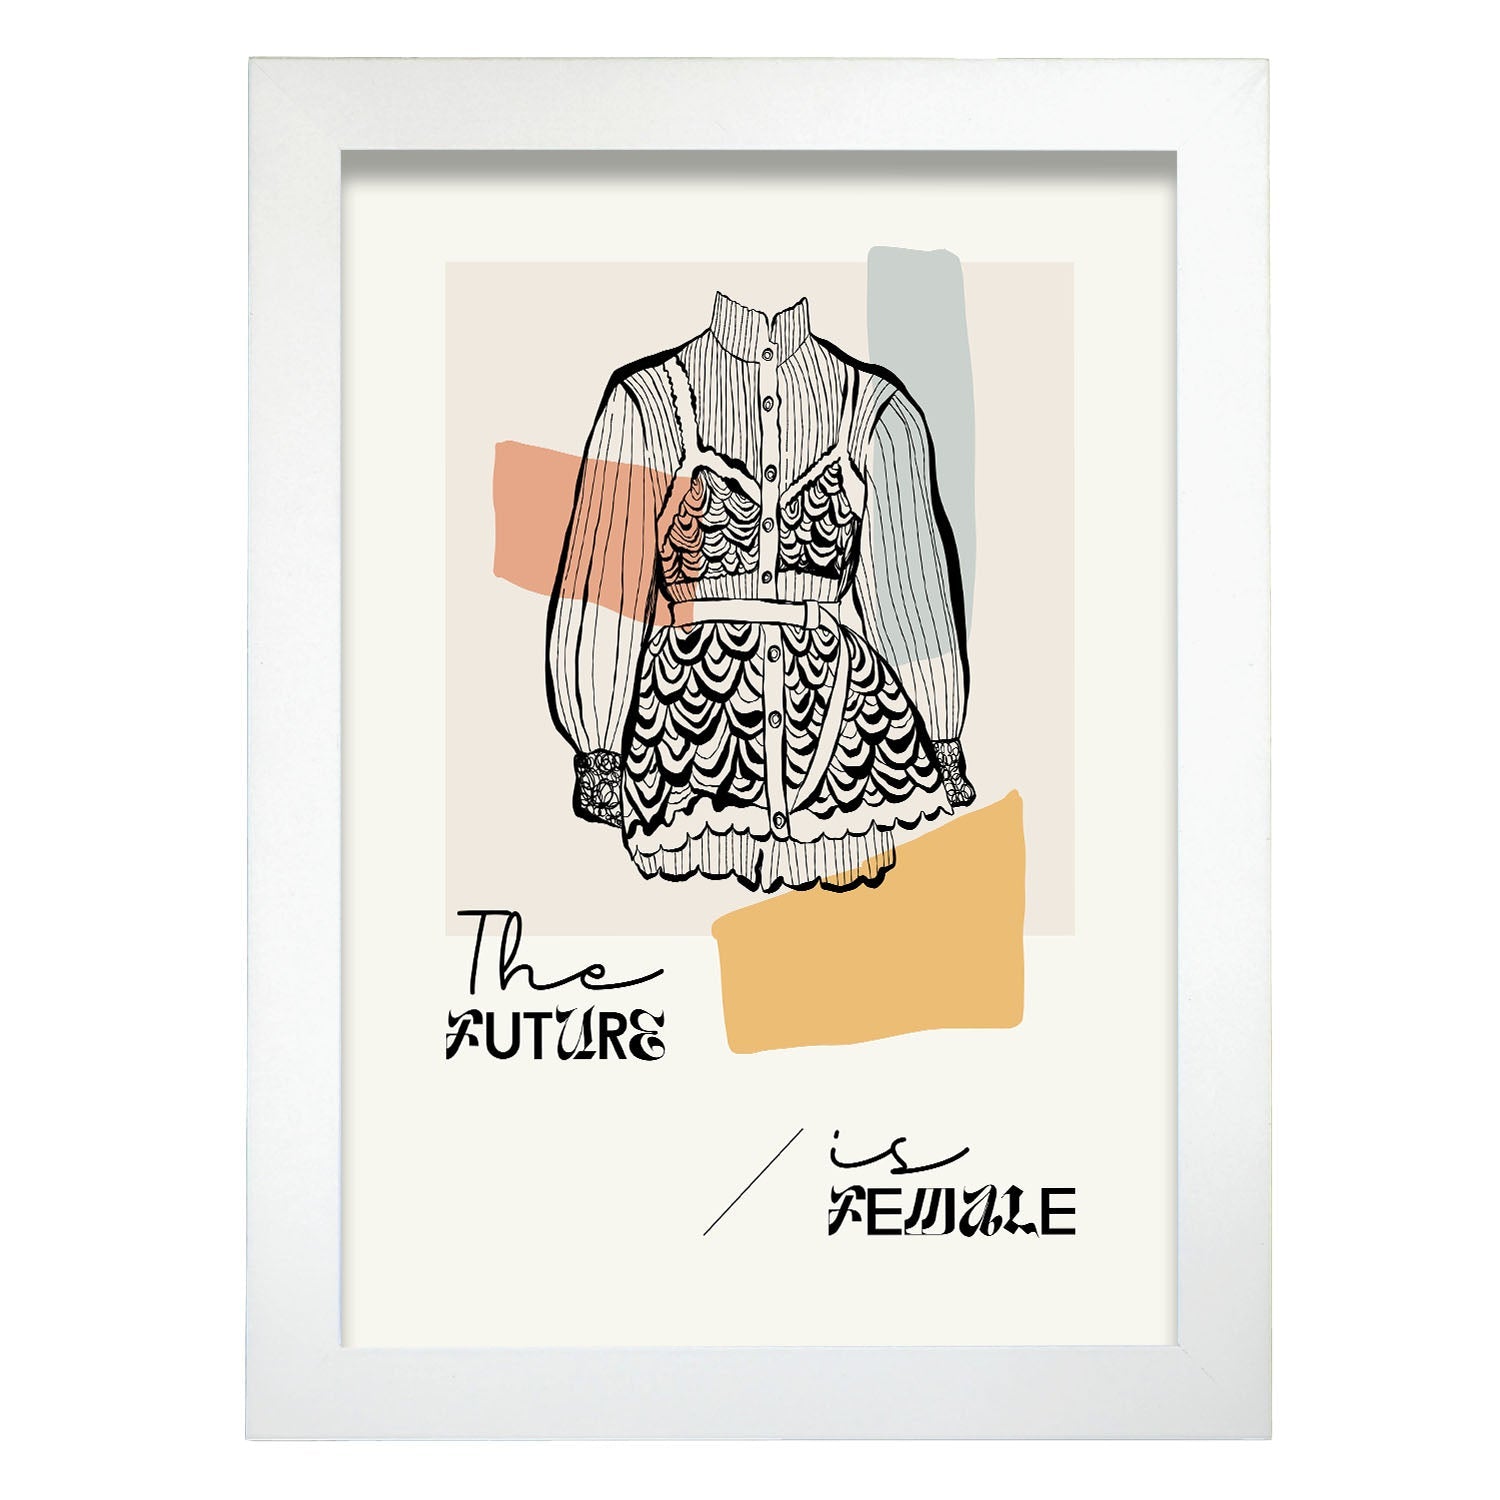 Future is female-Artwork-Nacnic-A4-Marco Blanco-Nacnic Estudio SL